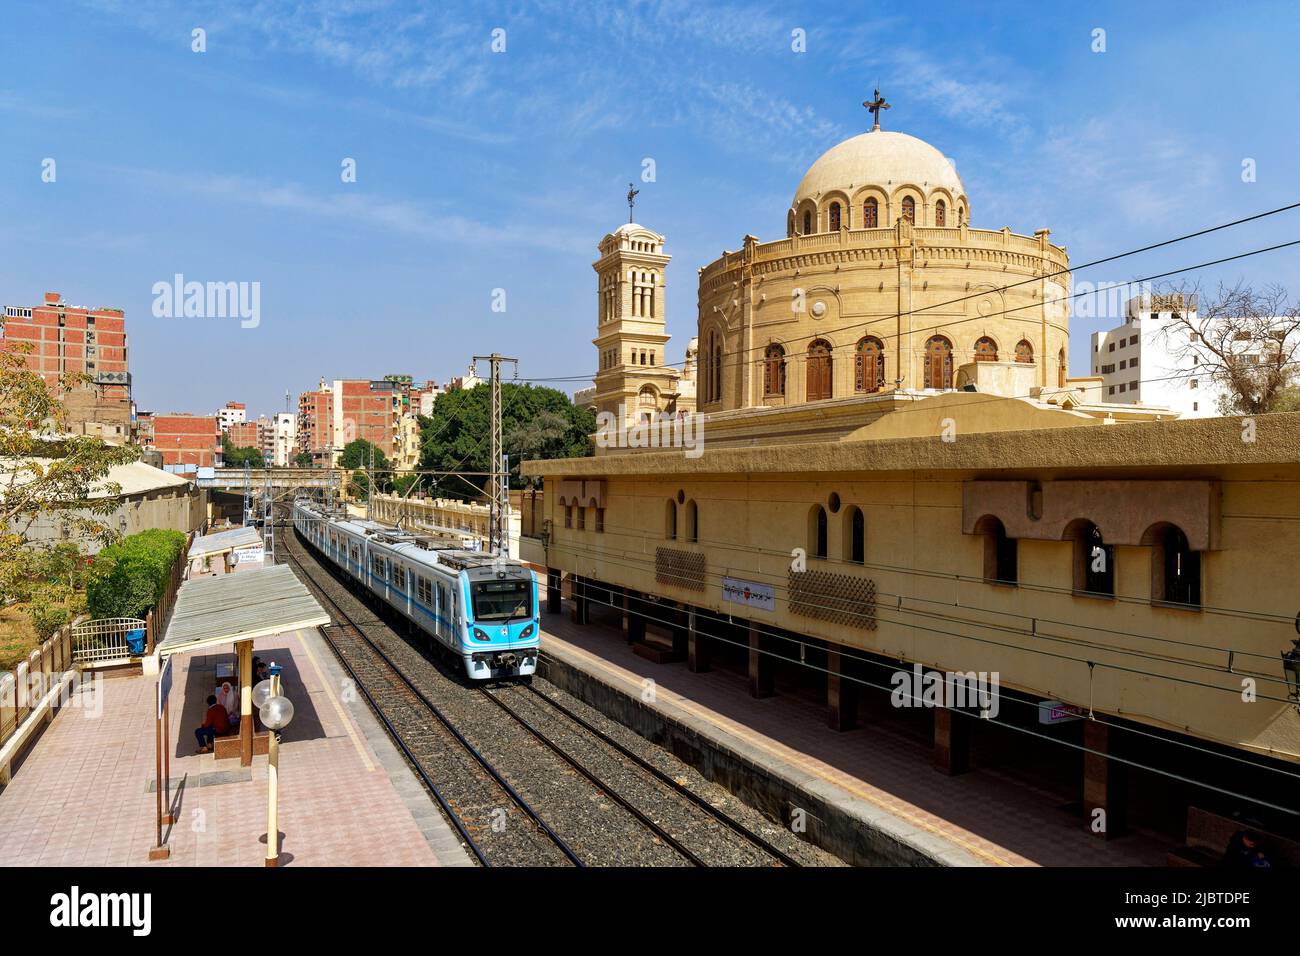 Ägypten, Kairo, Alt-Kairo, koptisches Viertel, U-Bahn-Station Mar Girgis mit der griechisch-orthodoxen Kirche Saint George Stockfoto